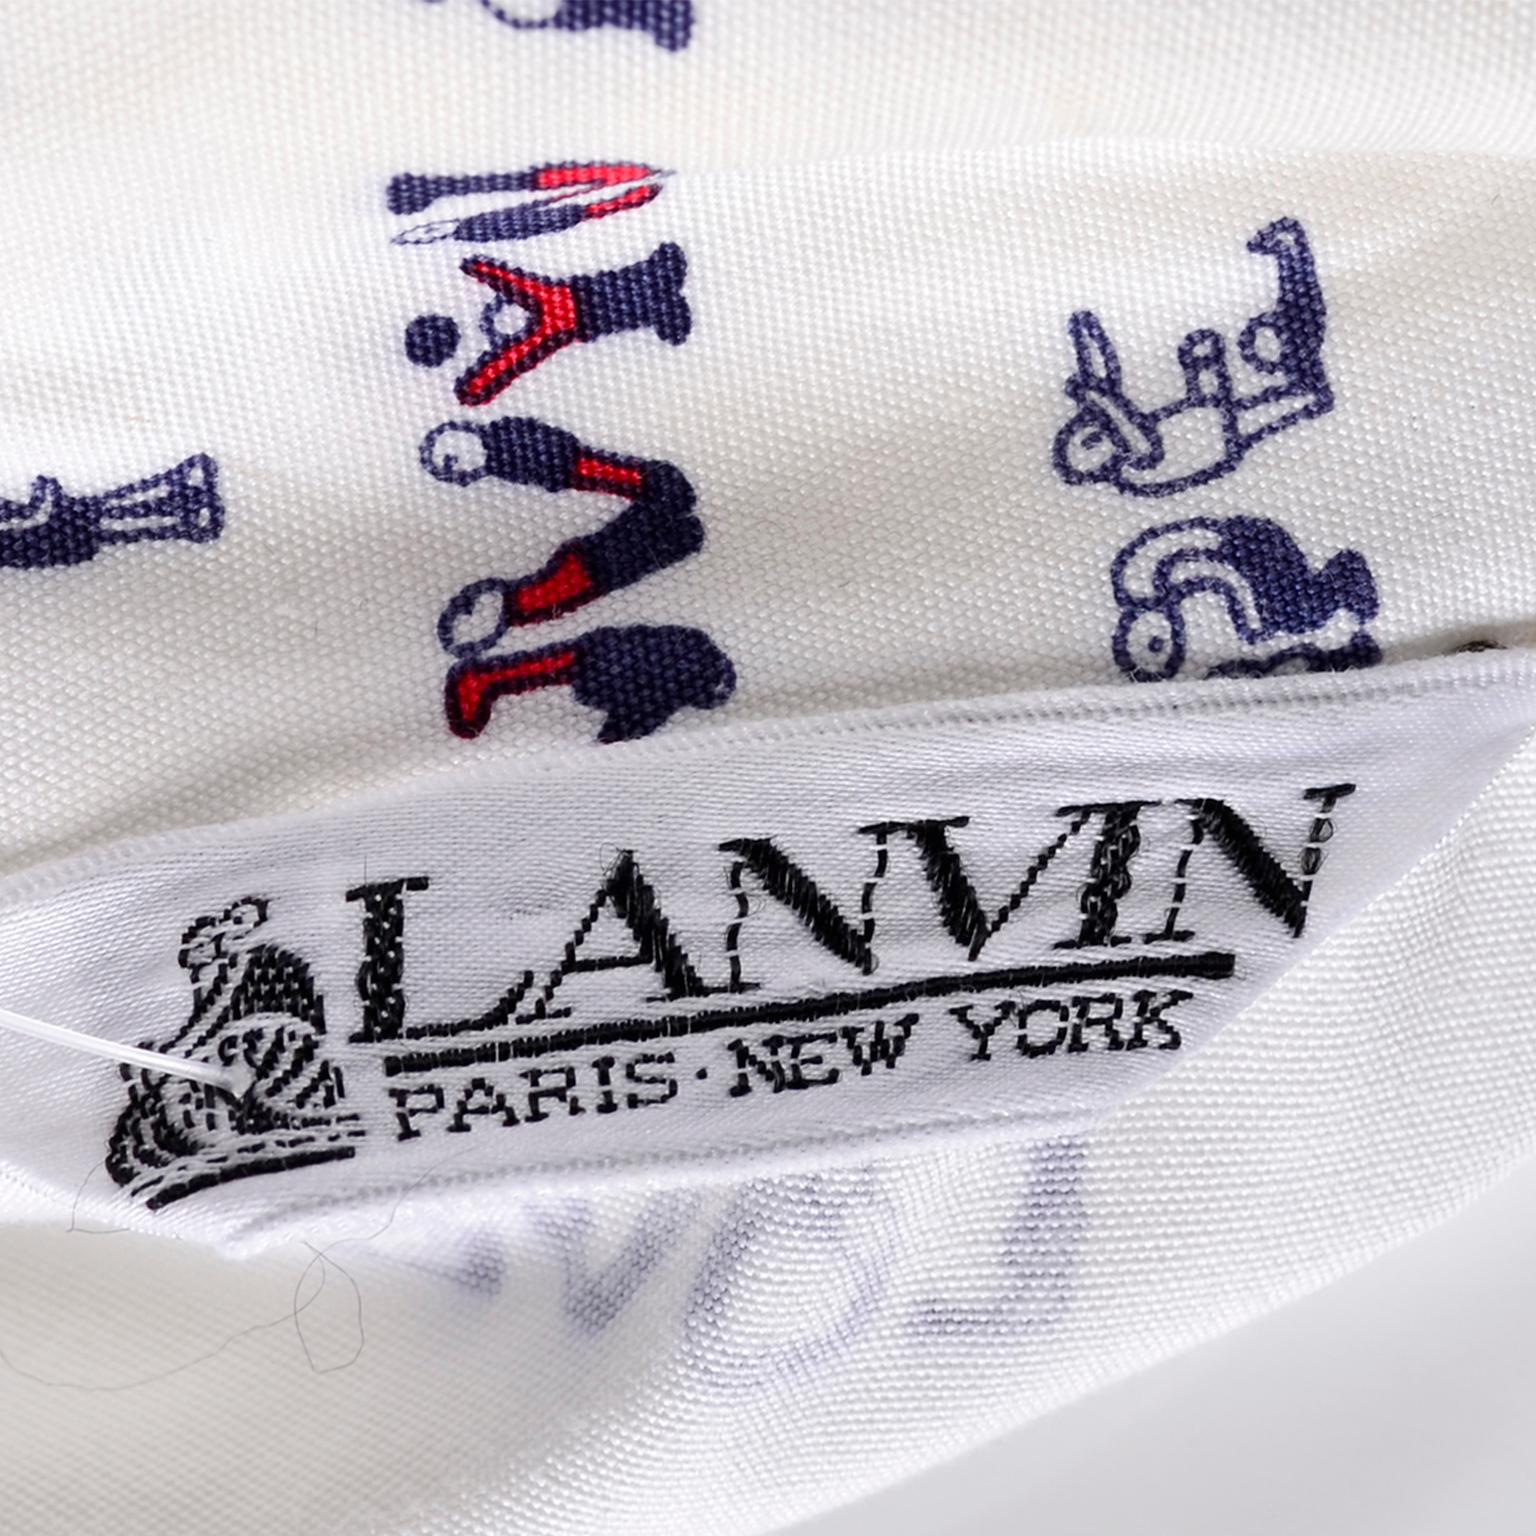 Lanvin Paris Pants & Jacket Vintage Monogram Fashion Acrobat Letters print Suit 4